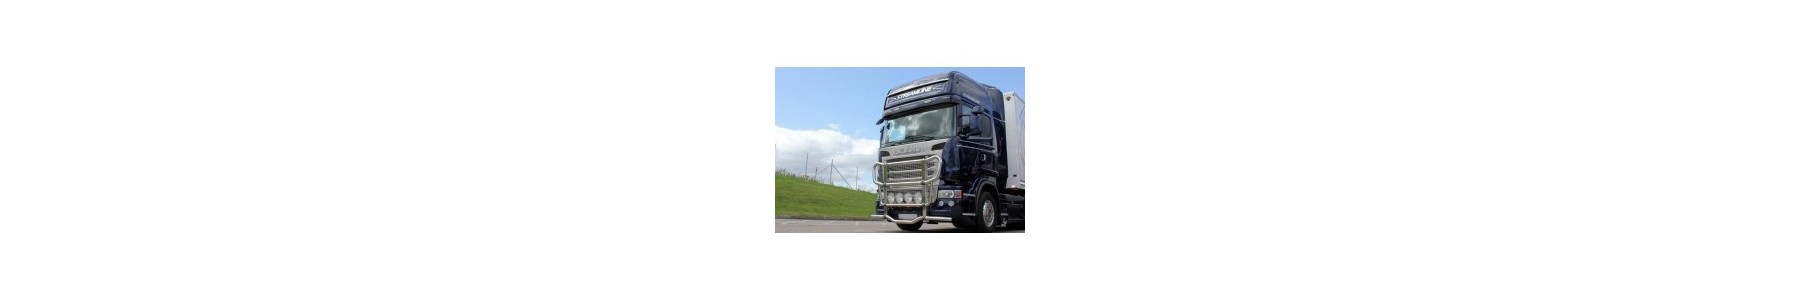 PARE BUFFLE pour votre camion Scania R. 22h22: Vente accessoires tuning poids lourd